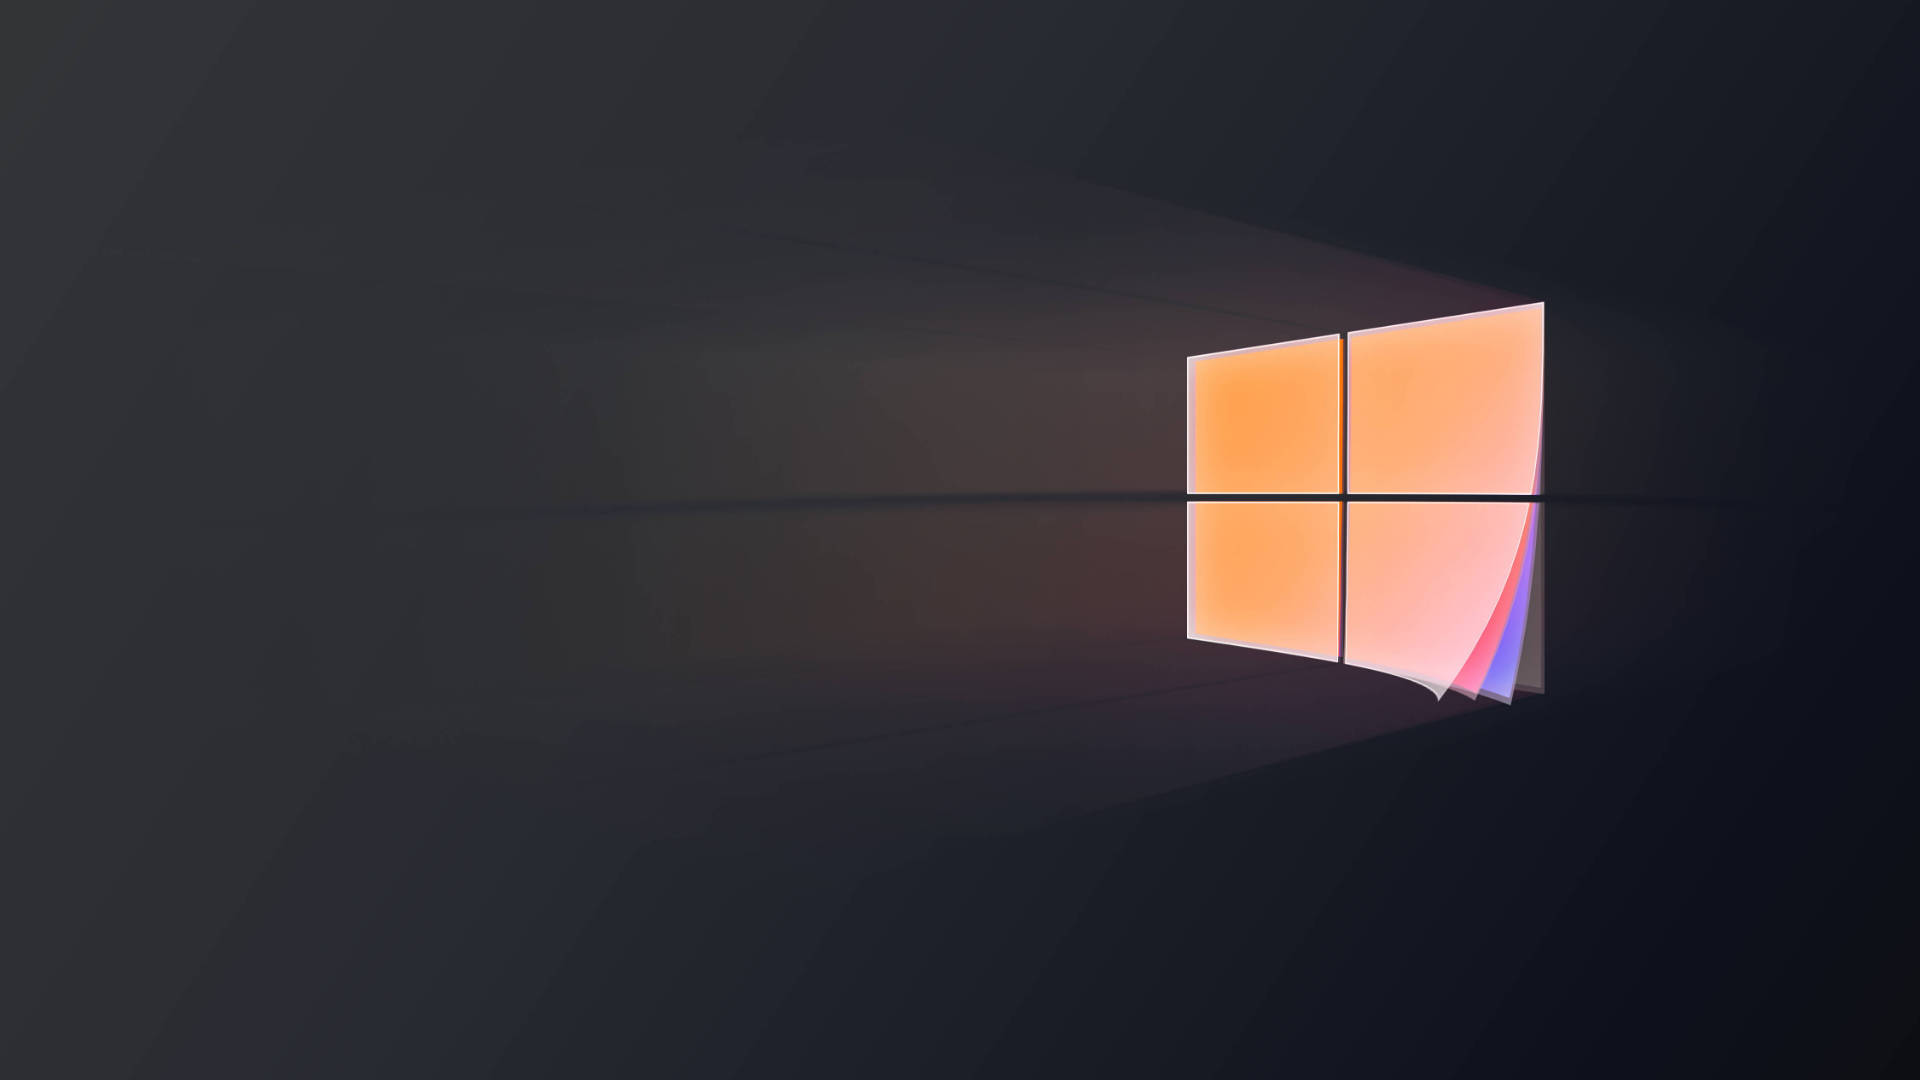 Hình nền Windows 10 đen sẽ mang đến cho bạn sự tinh tế và mạnh mẽ cho màn hình máy tính của bạn. Tìm hiểu và cảm nhận sự khác biệt của hình nền đen với các hình nền thông thường chỉ với một cú nhấp chuột.